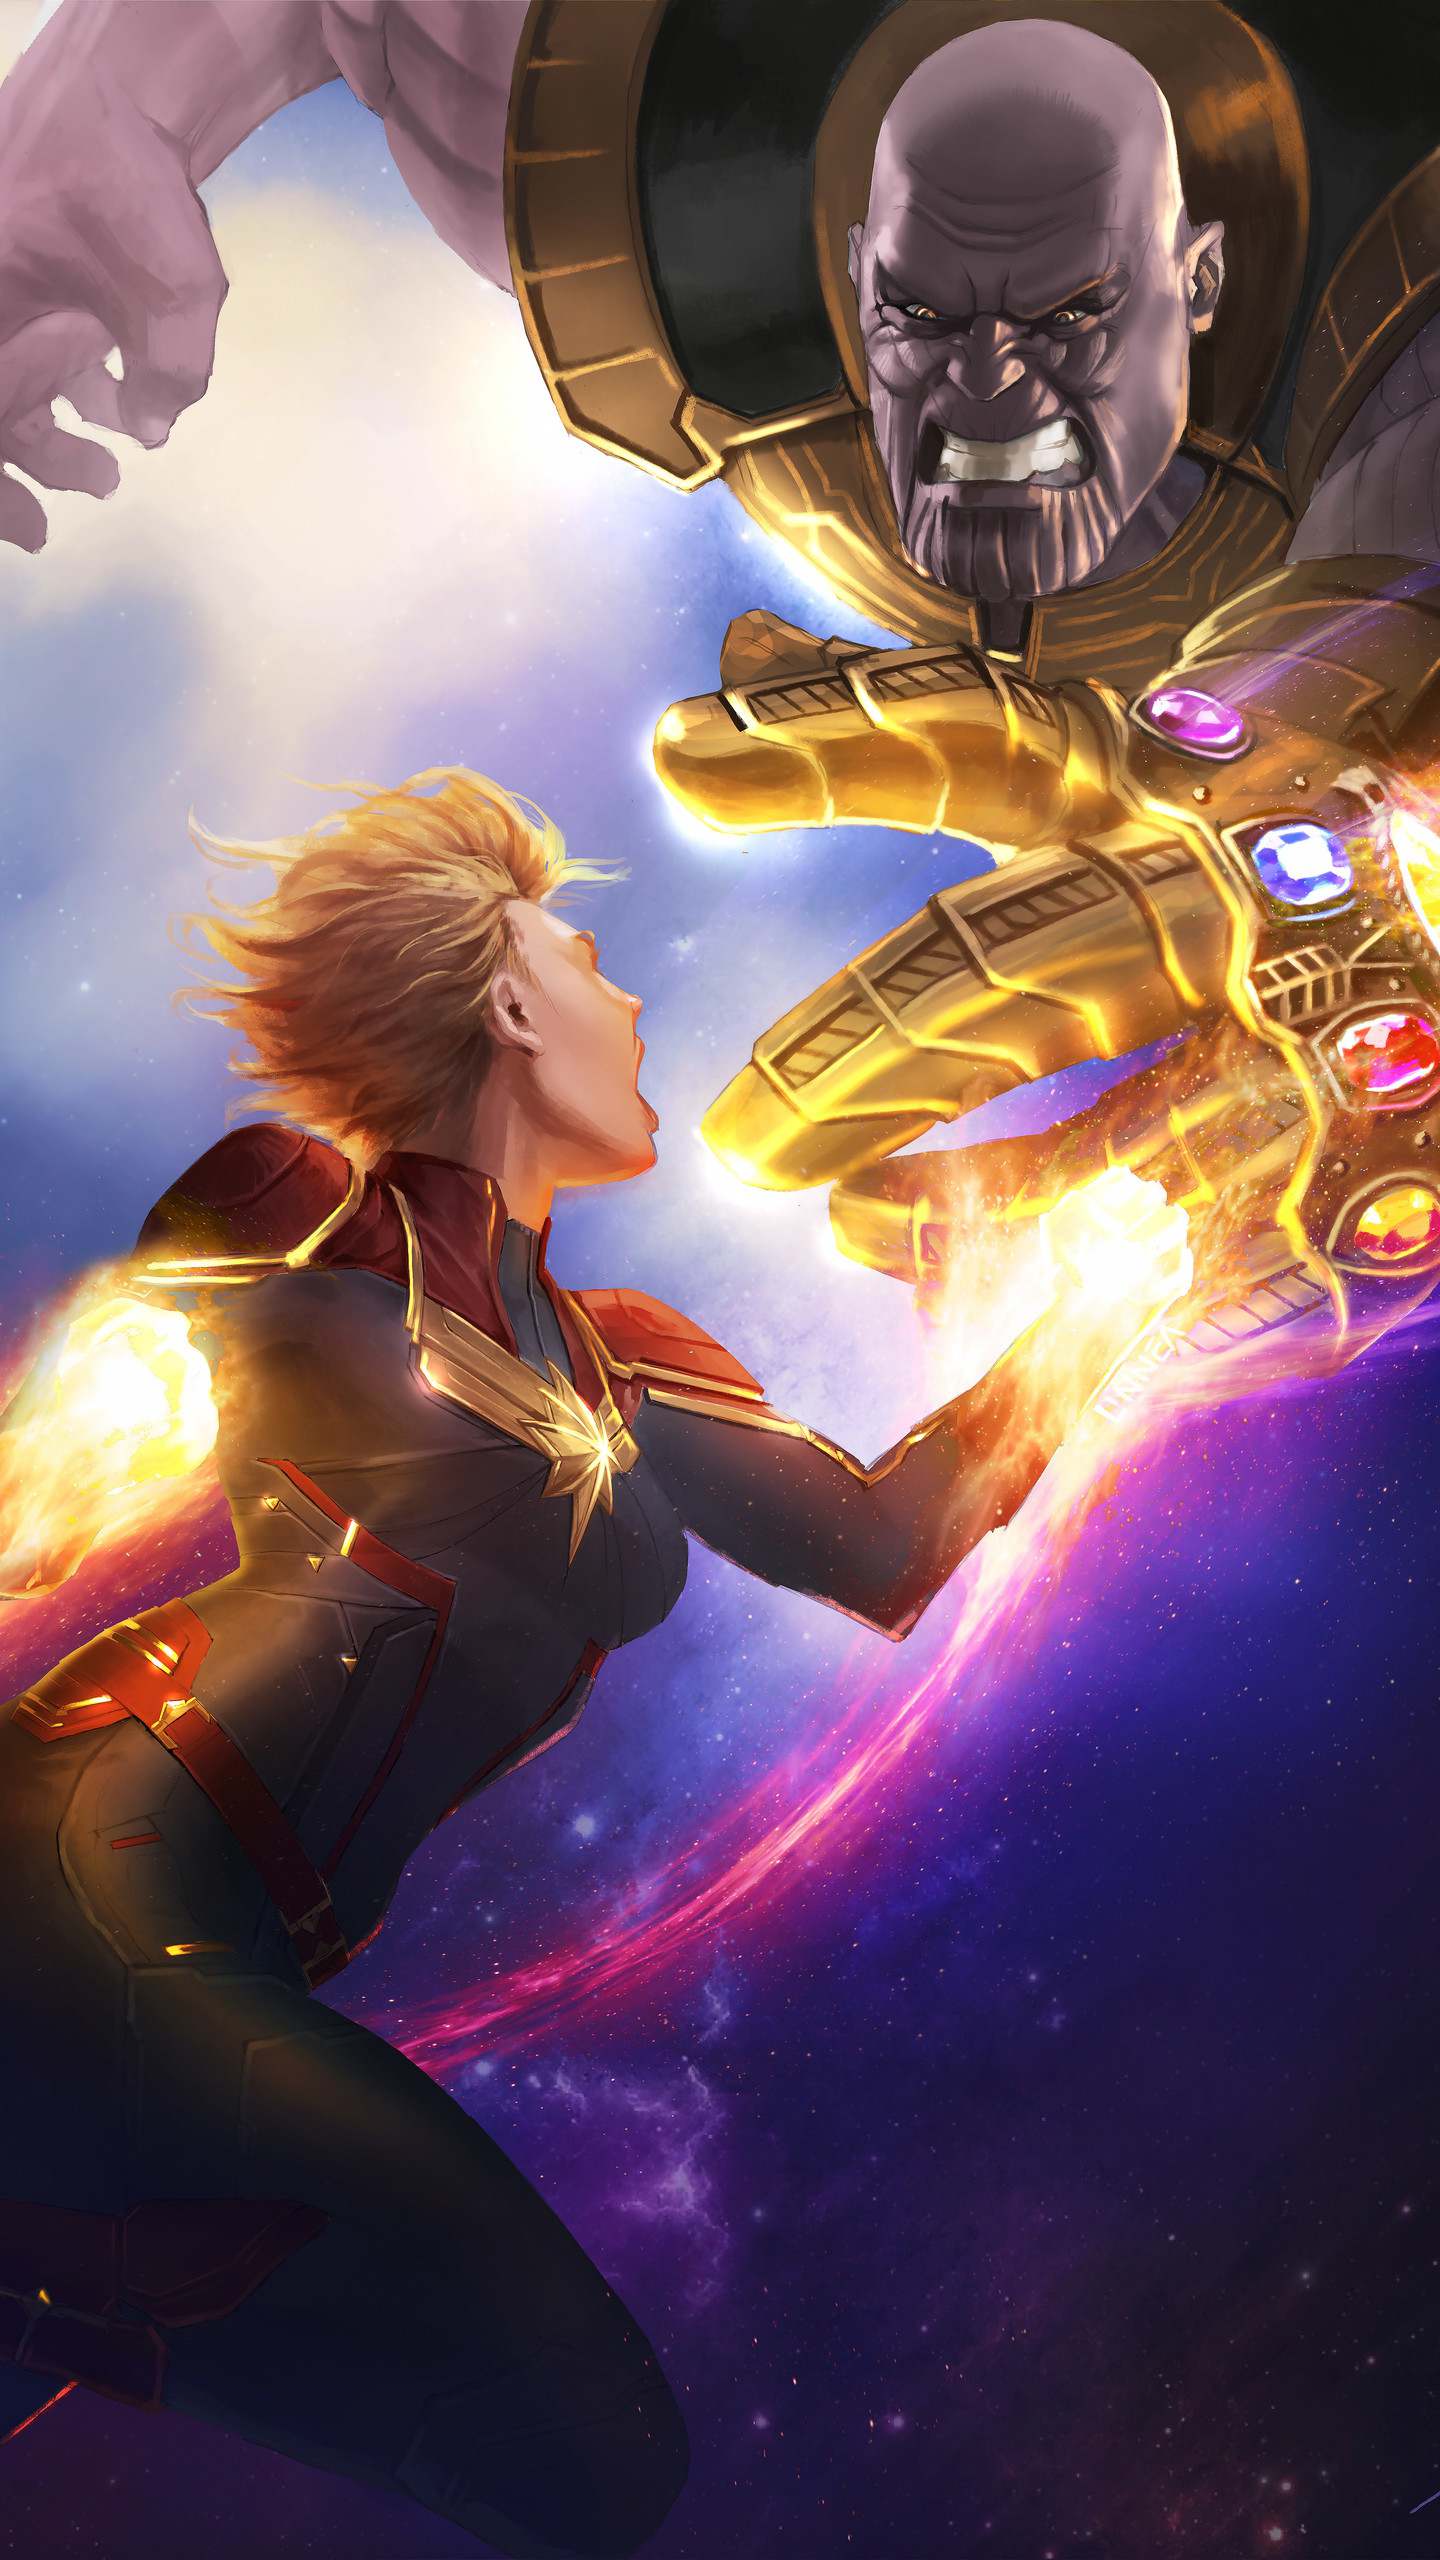 Thanos vs captain marvel fight avengers endgame iphone wallpaper